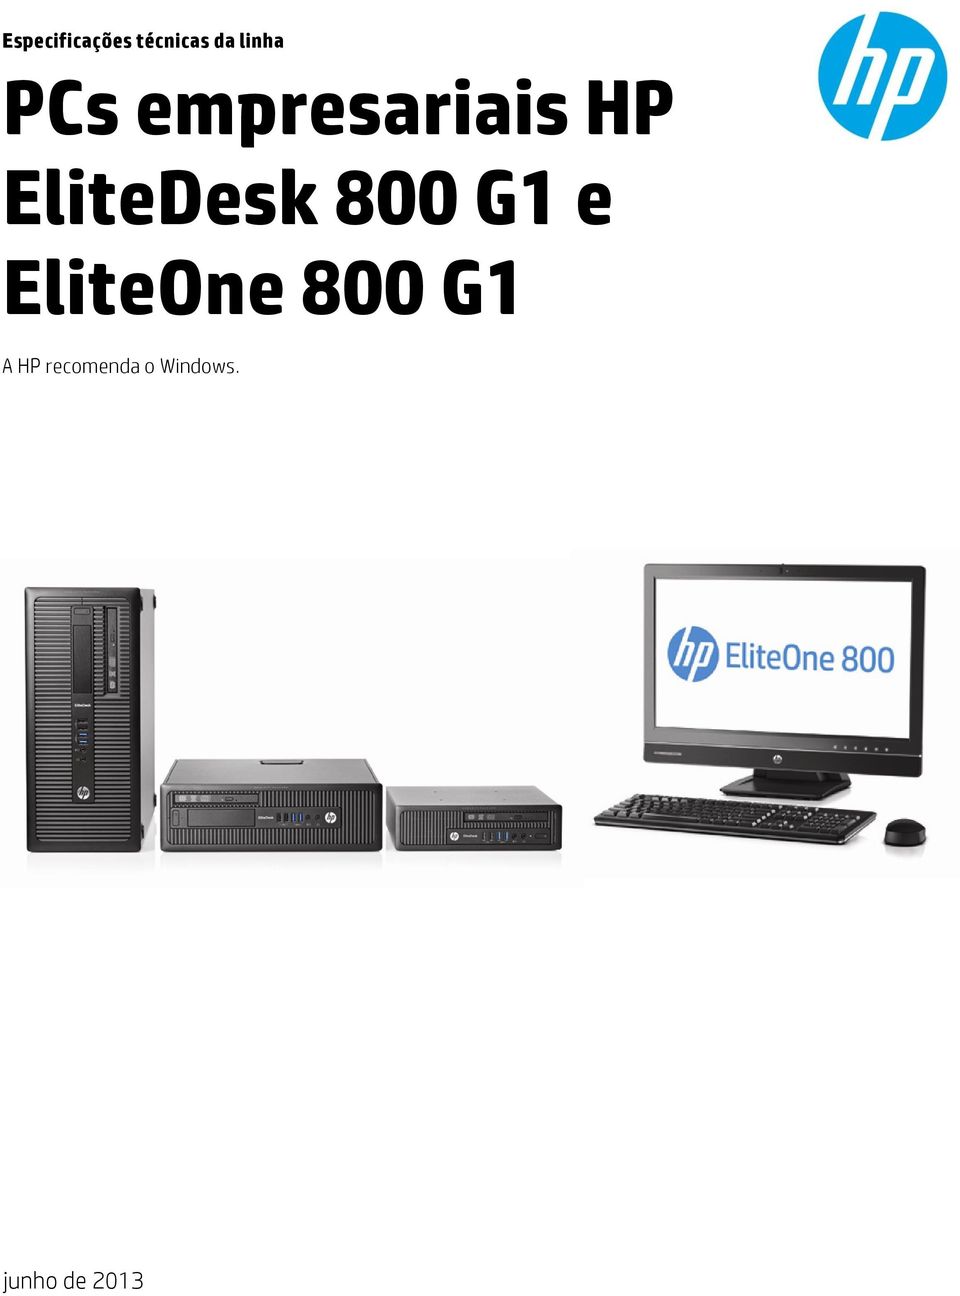 HP EliteDesk 800 G1 e